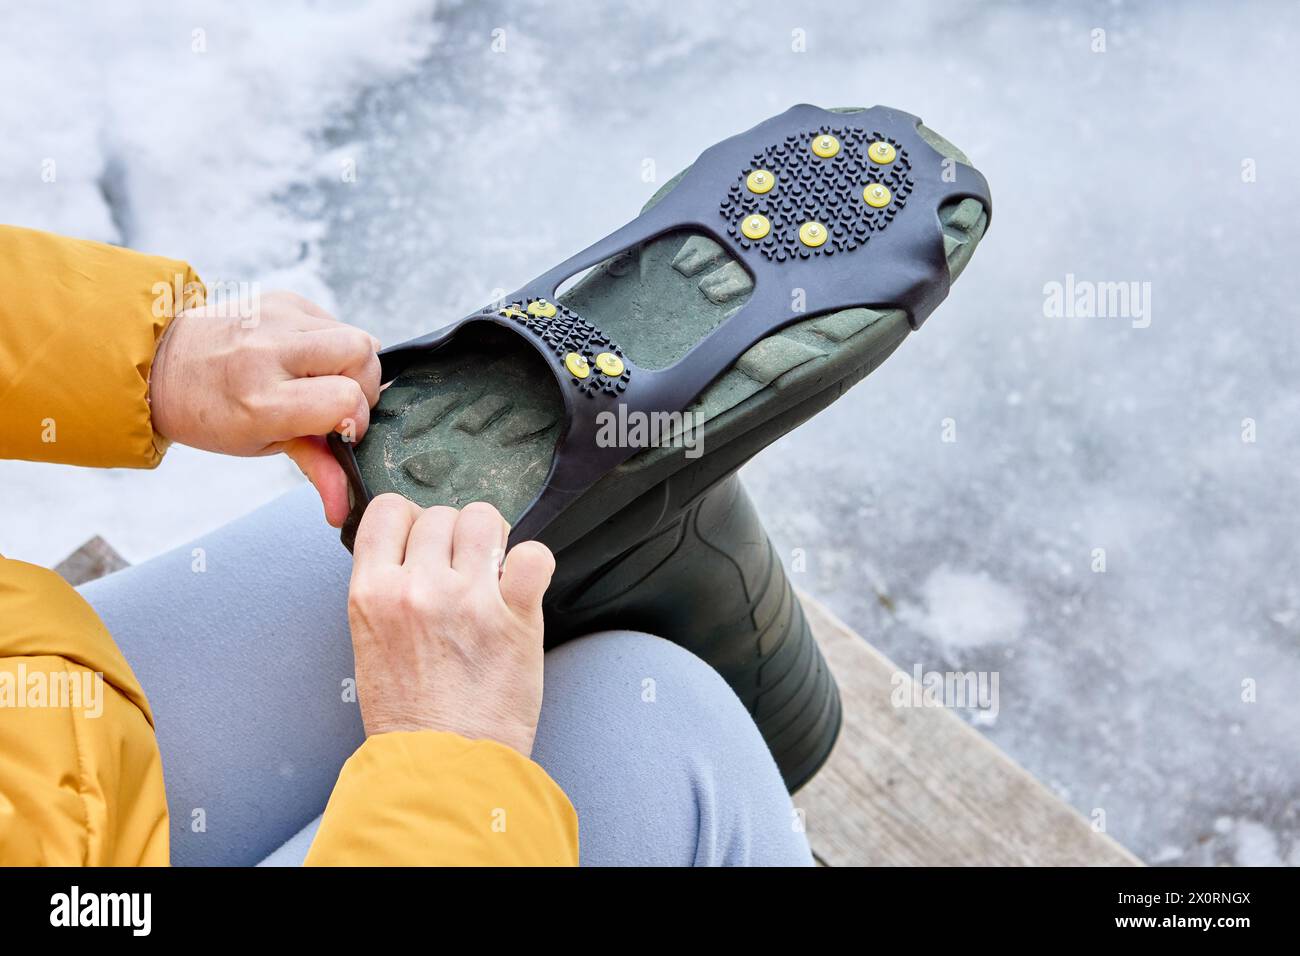 Installation de poignées antidérapantes avec crampons sur le bas de la chaussure. Banque D'Images